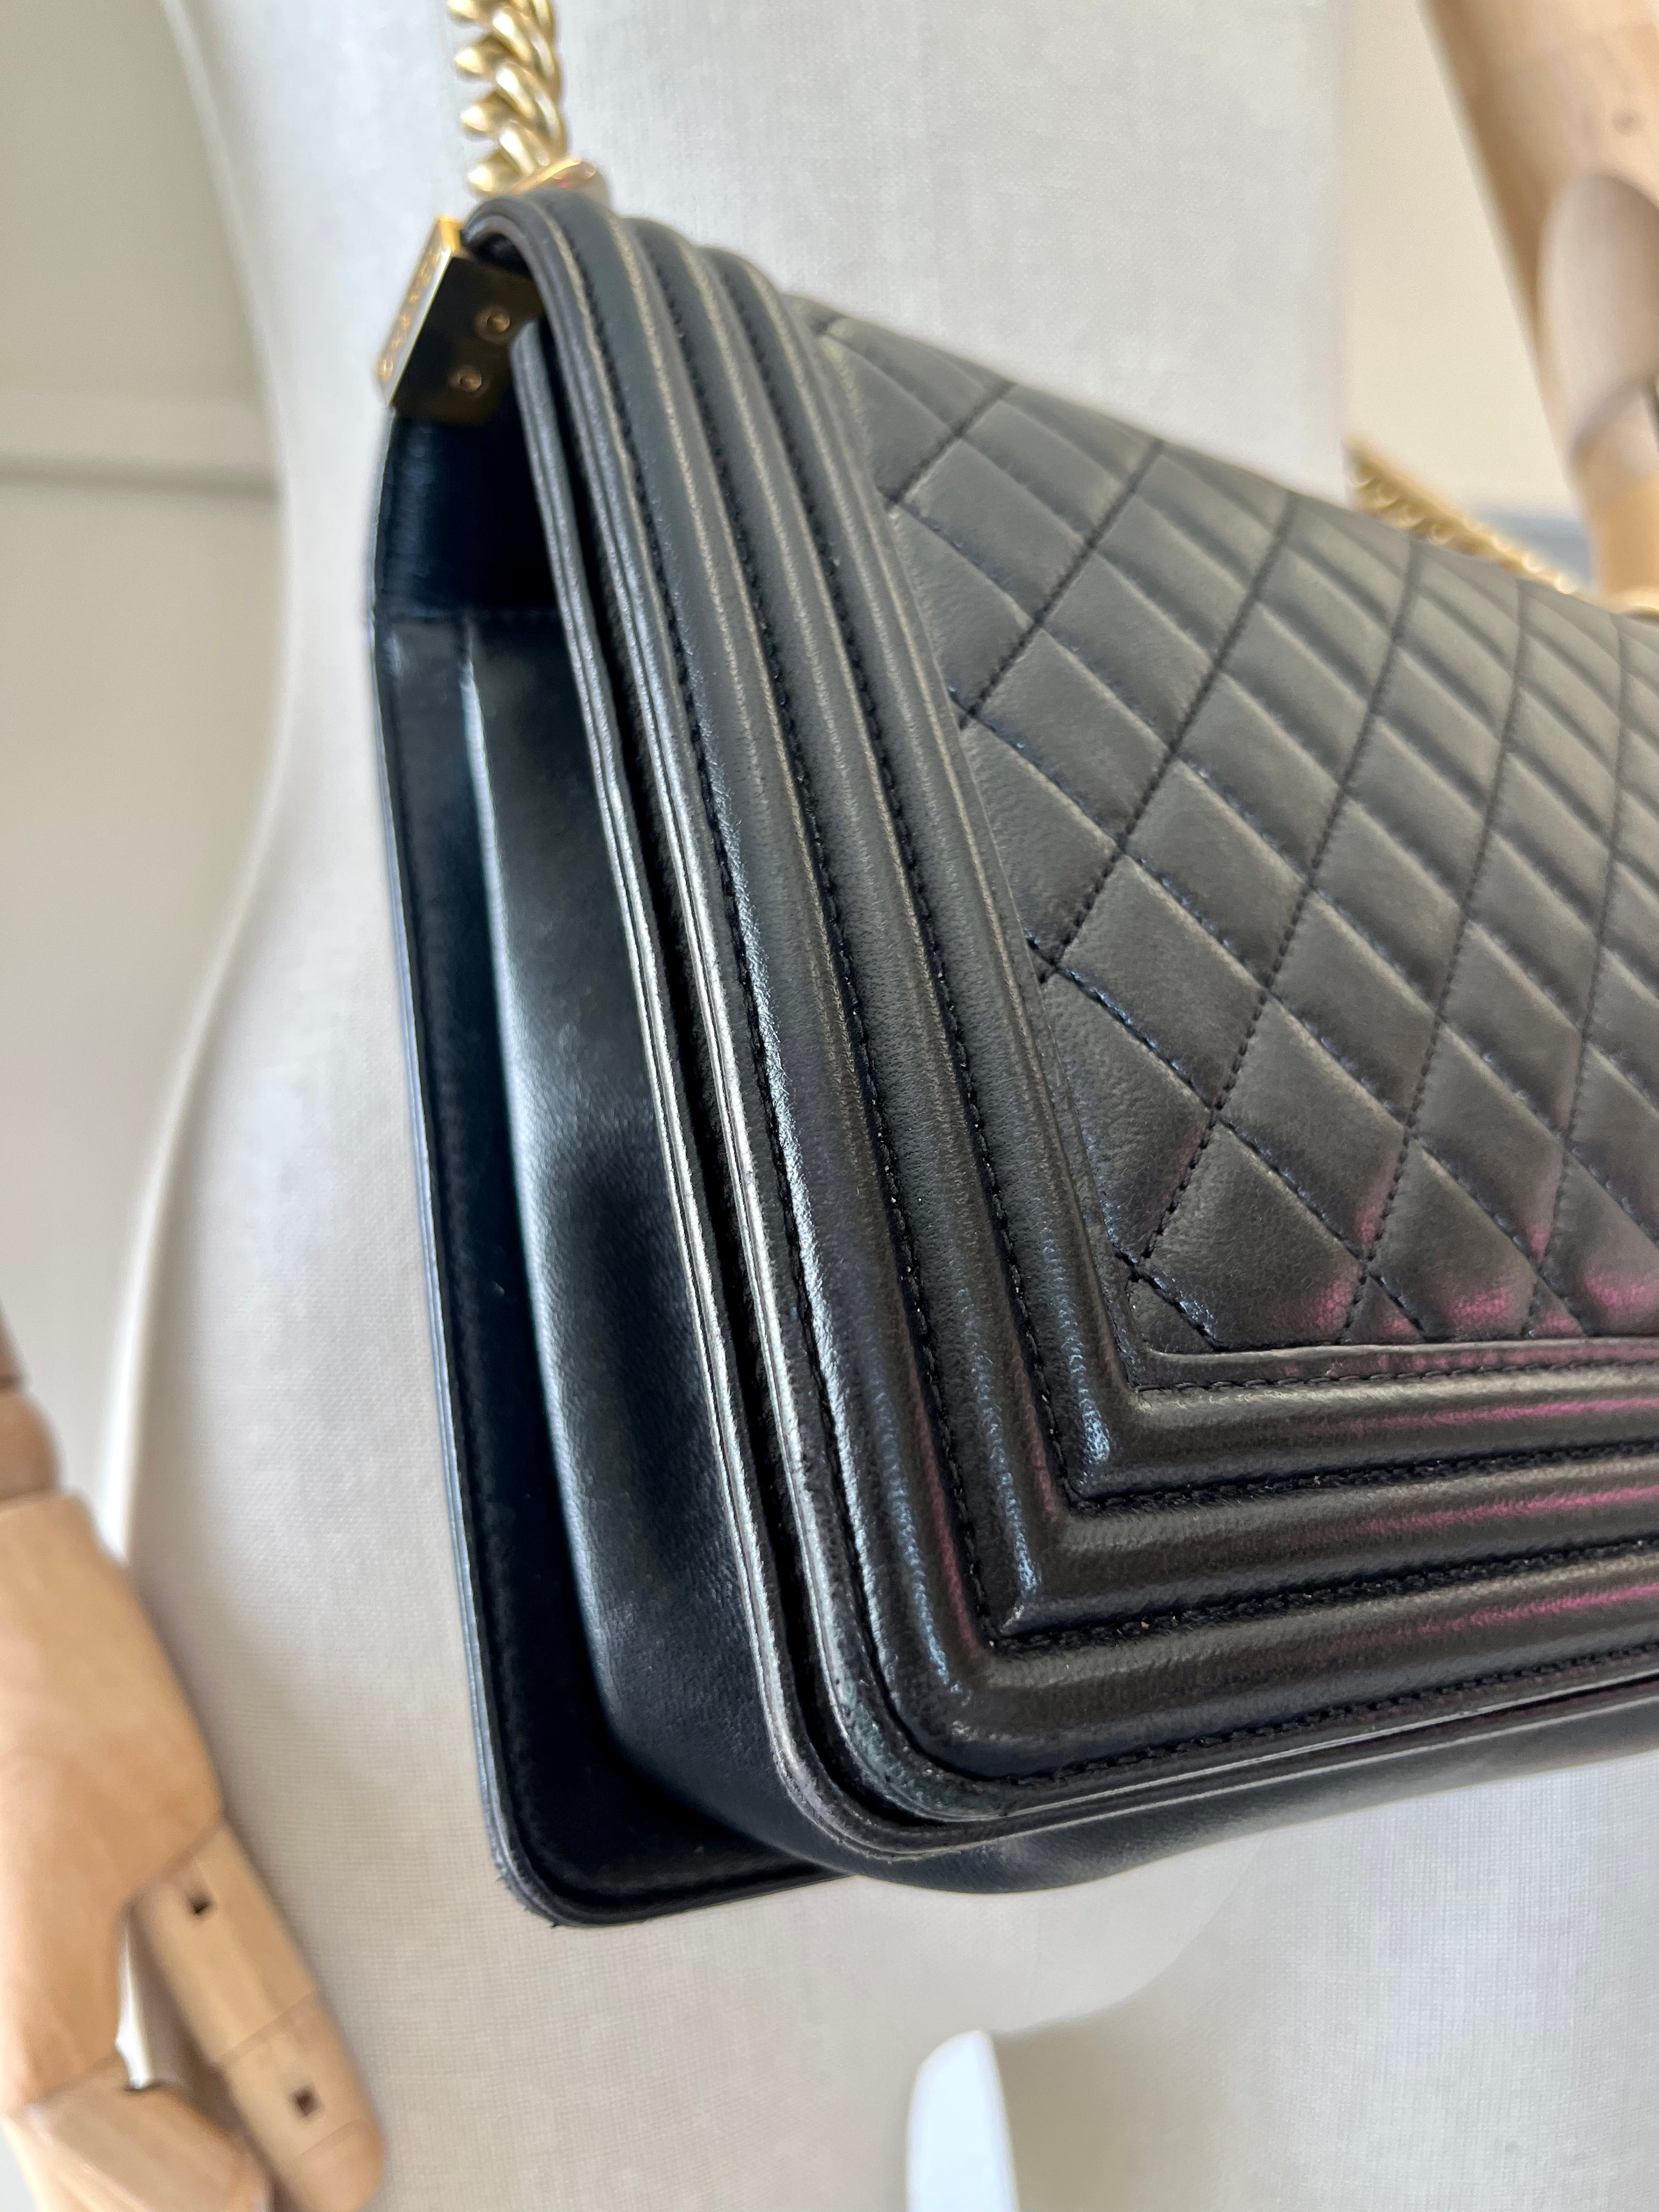 Chanel Calf Hair Boy Bag, Louis Vuitton Noé Handbag 390315